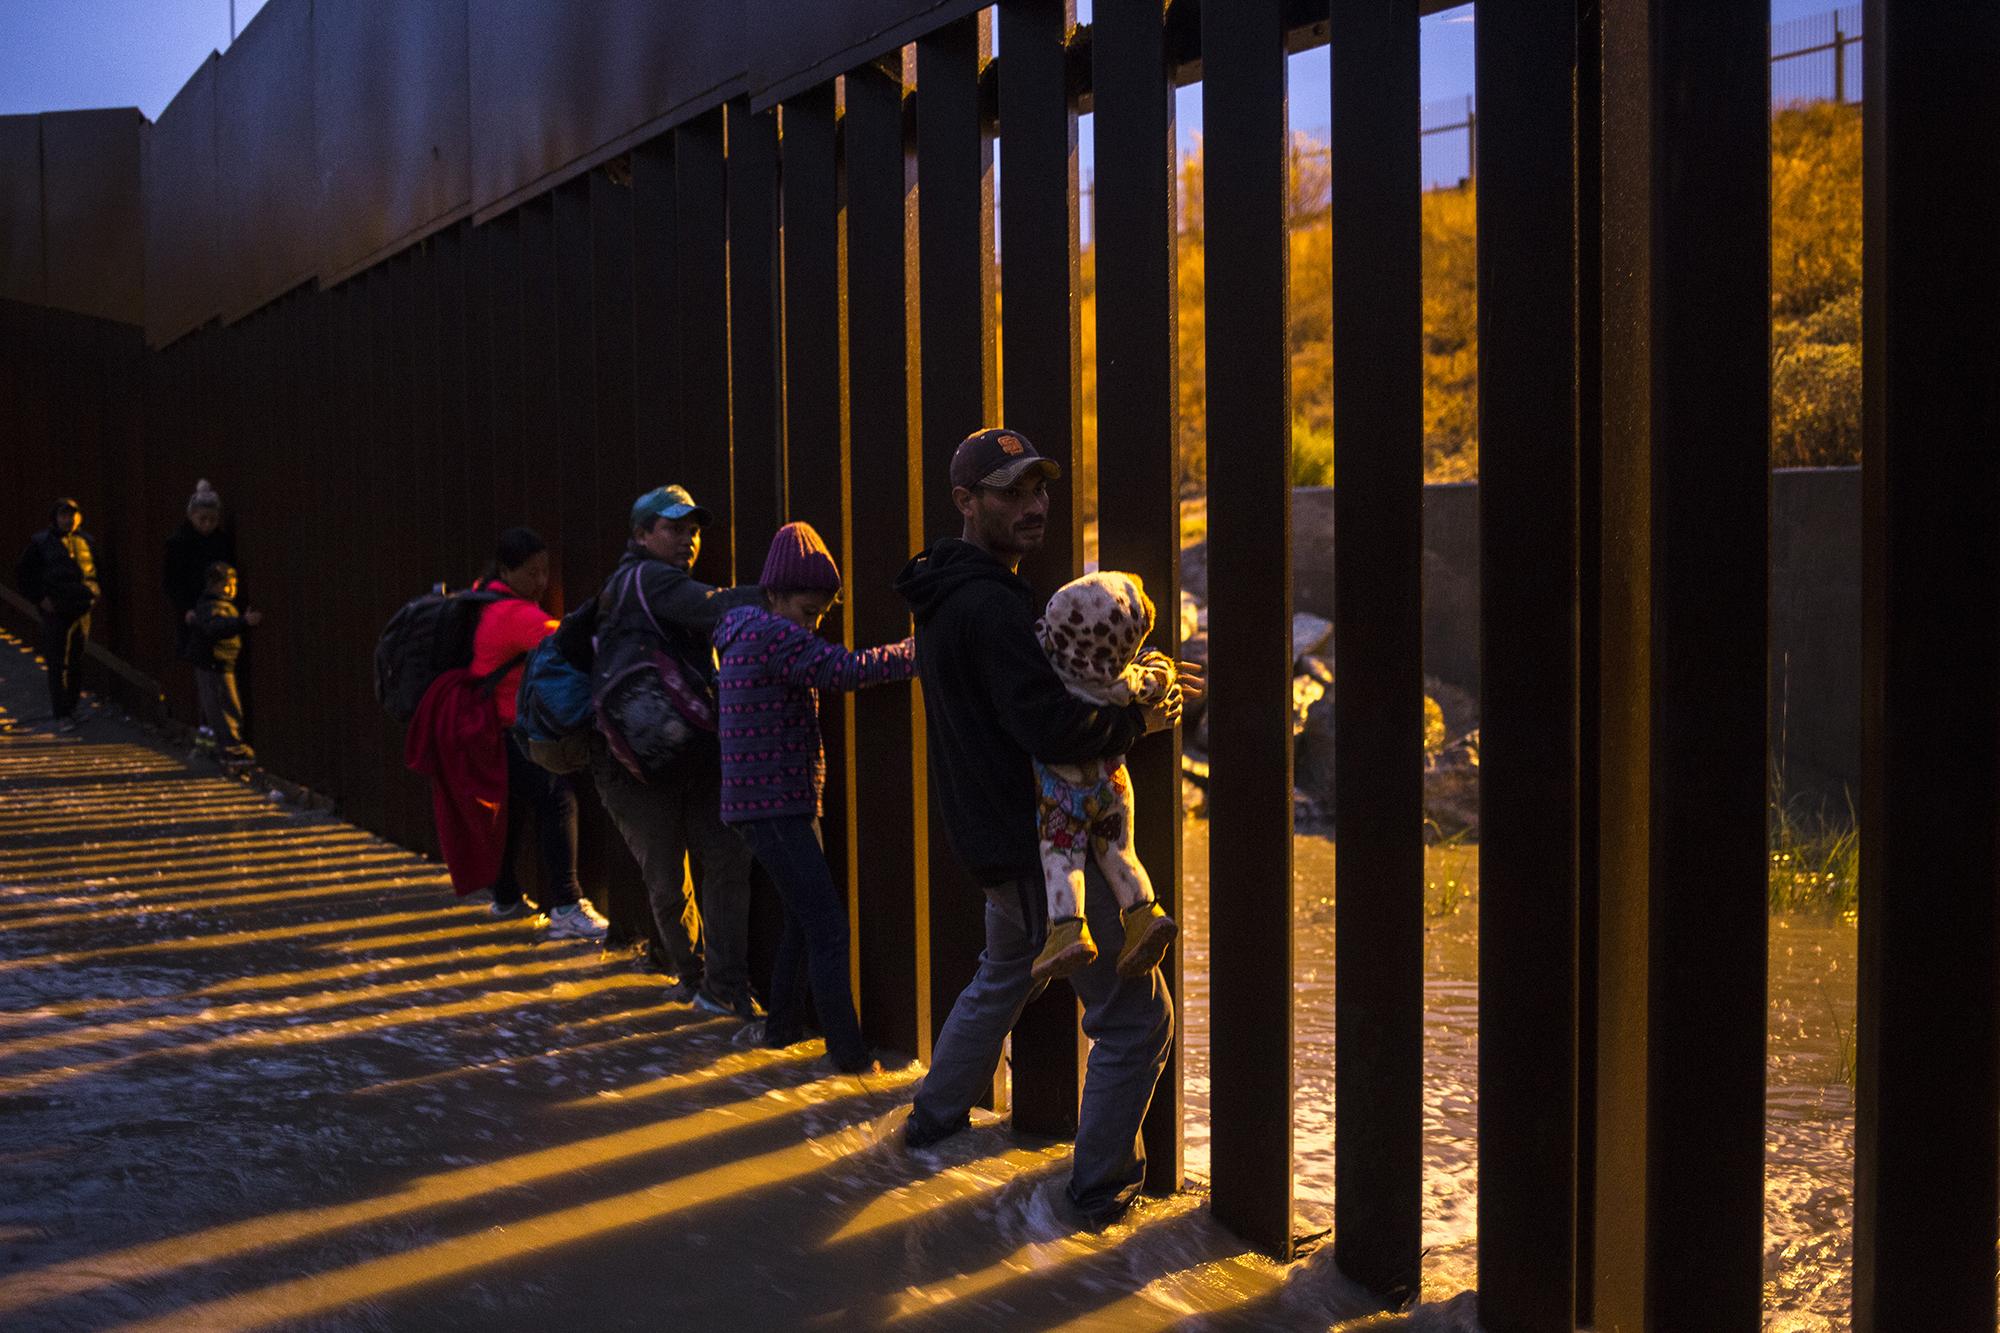 Padres desesperados, salvadoreños y hondureños con sus hijos en brazos, intentando cruzar el muro fronterizo en playas de Tijuana, México. Diciembre de 2018. Foto: Víctor Peña/ El Faro